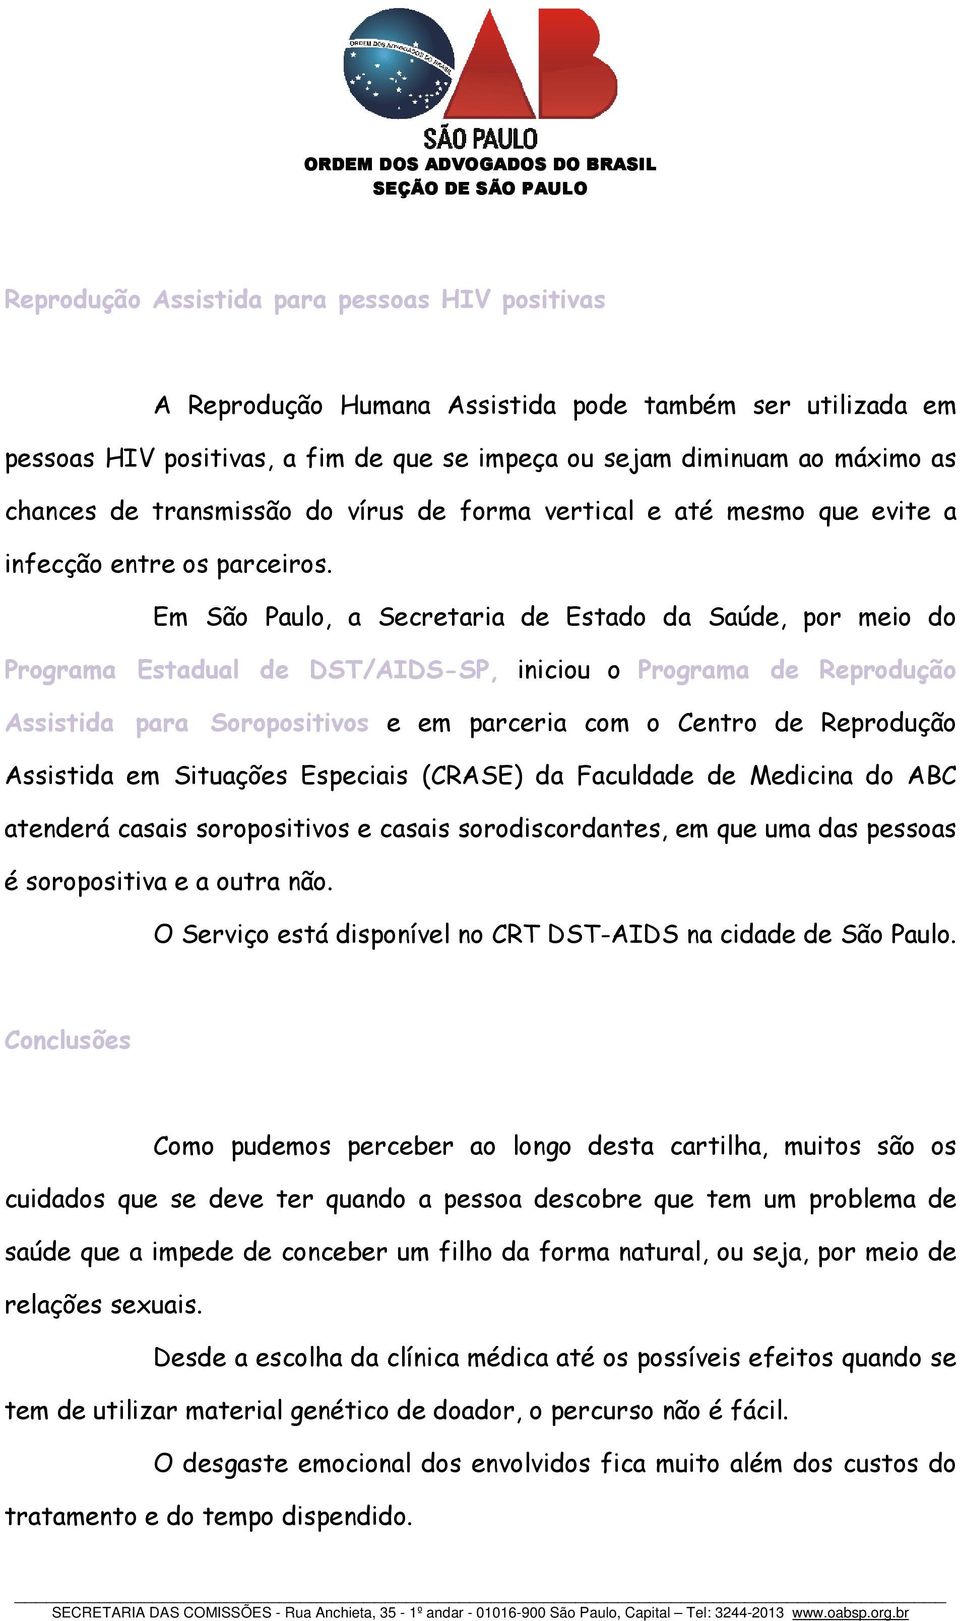 Em São Paulo, a Secretaria de Estado da Saúde, por meio do Programa Estadual de DST/AIDS-SP, iniciou o Programa de Reprodução Assistida para Soropositivos e em parceria com o Centro de Reprodução